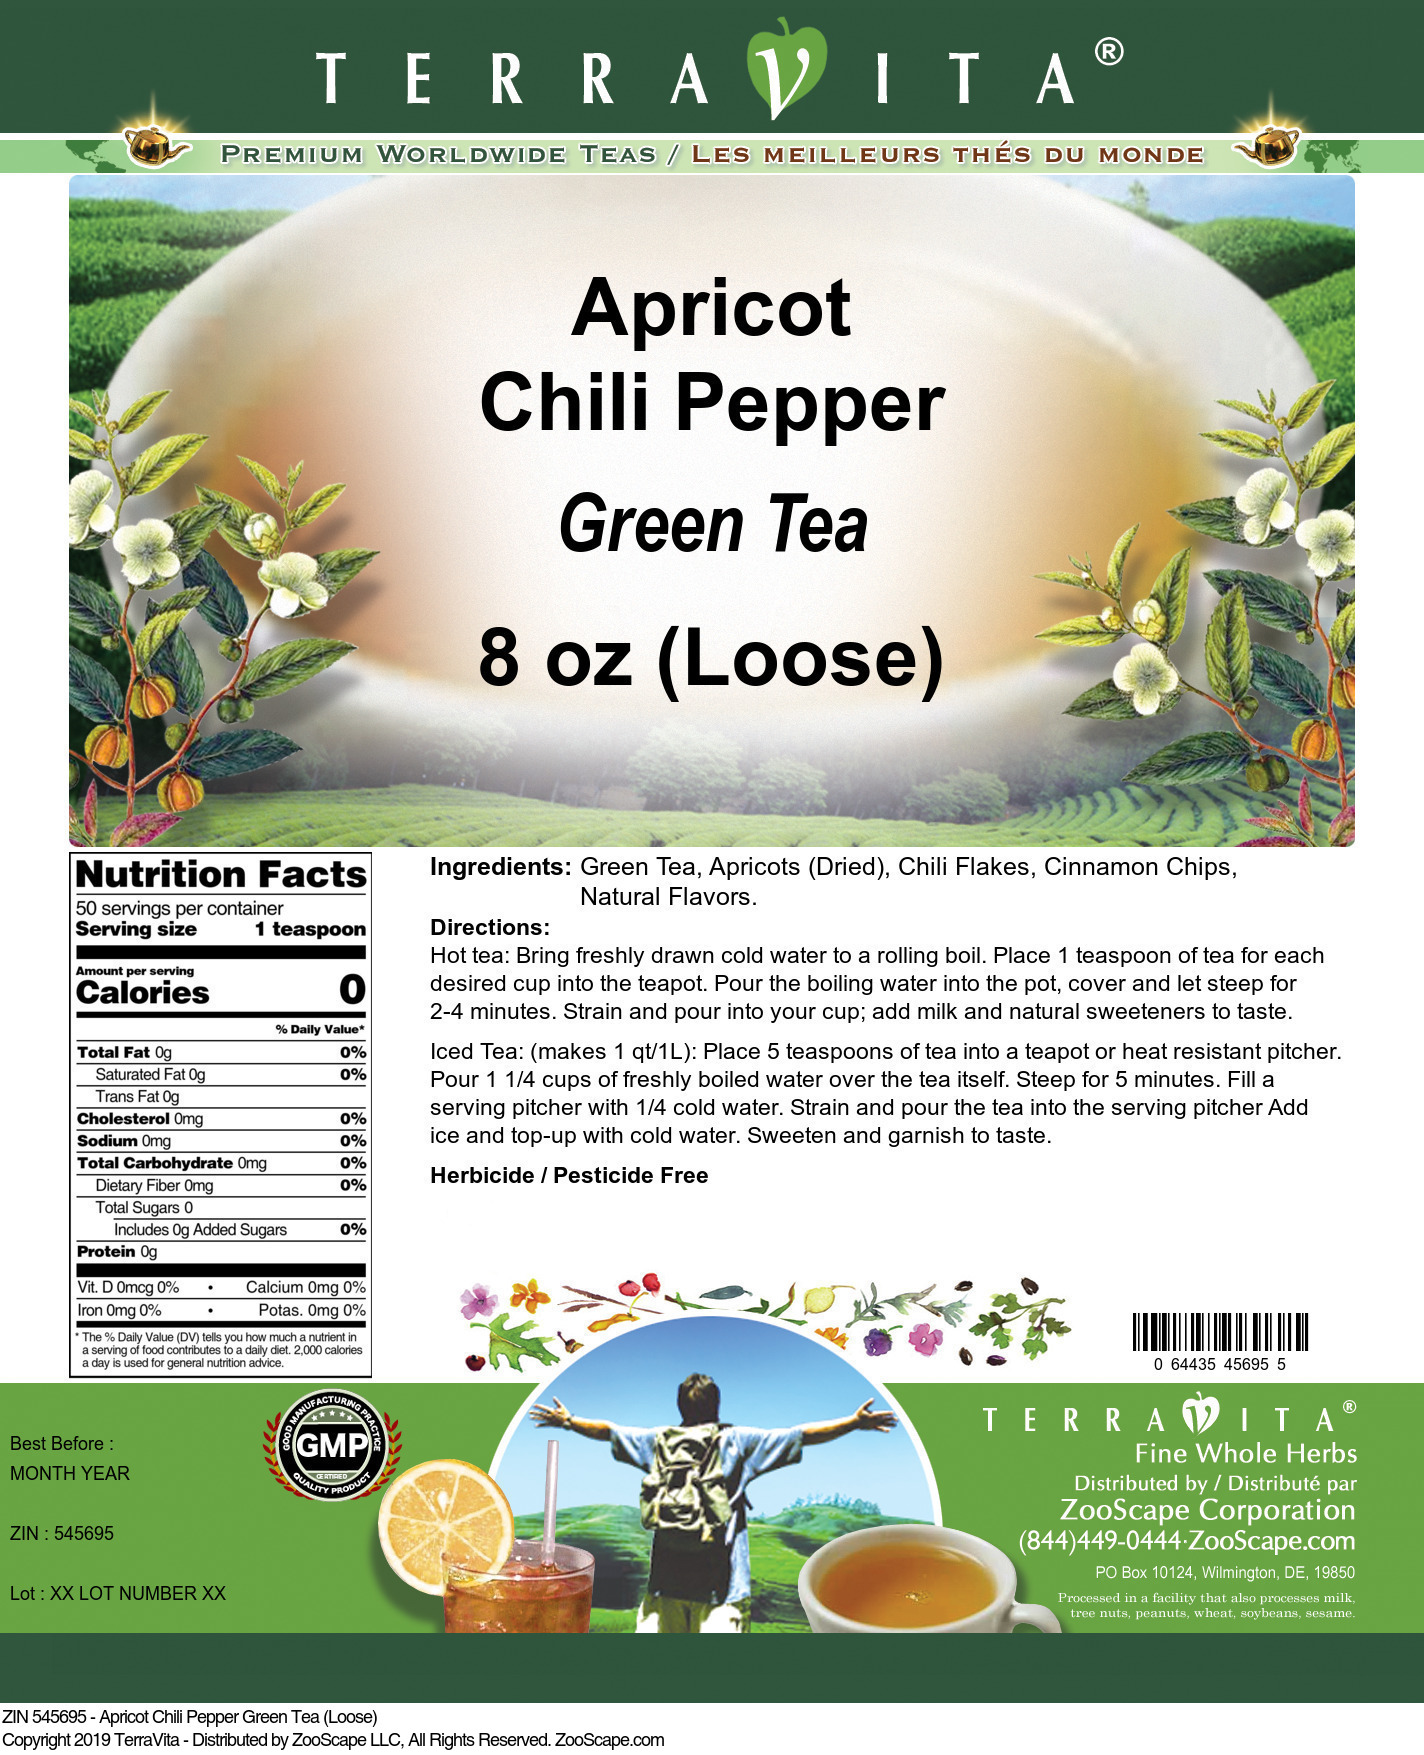 Apricot Chili Pepper Green Tea (Loose) - Label